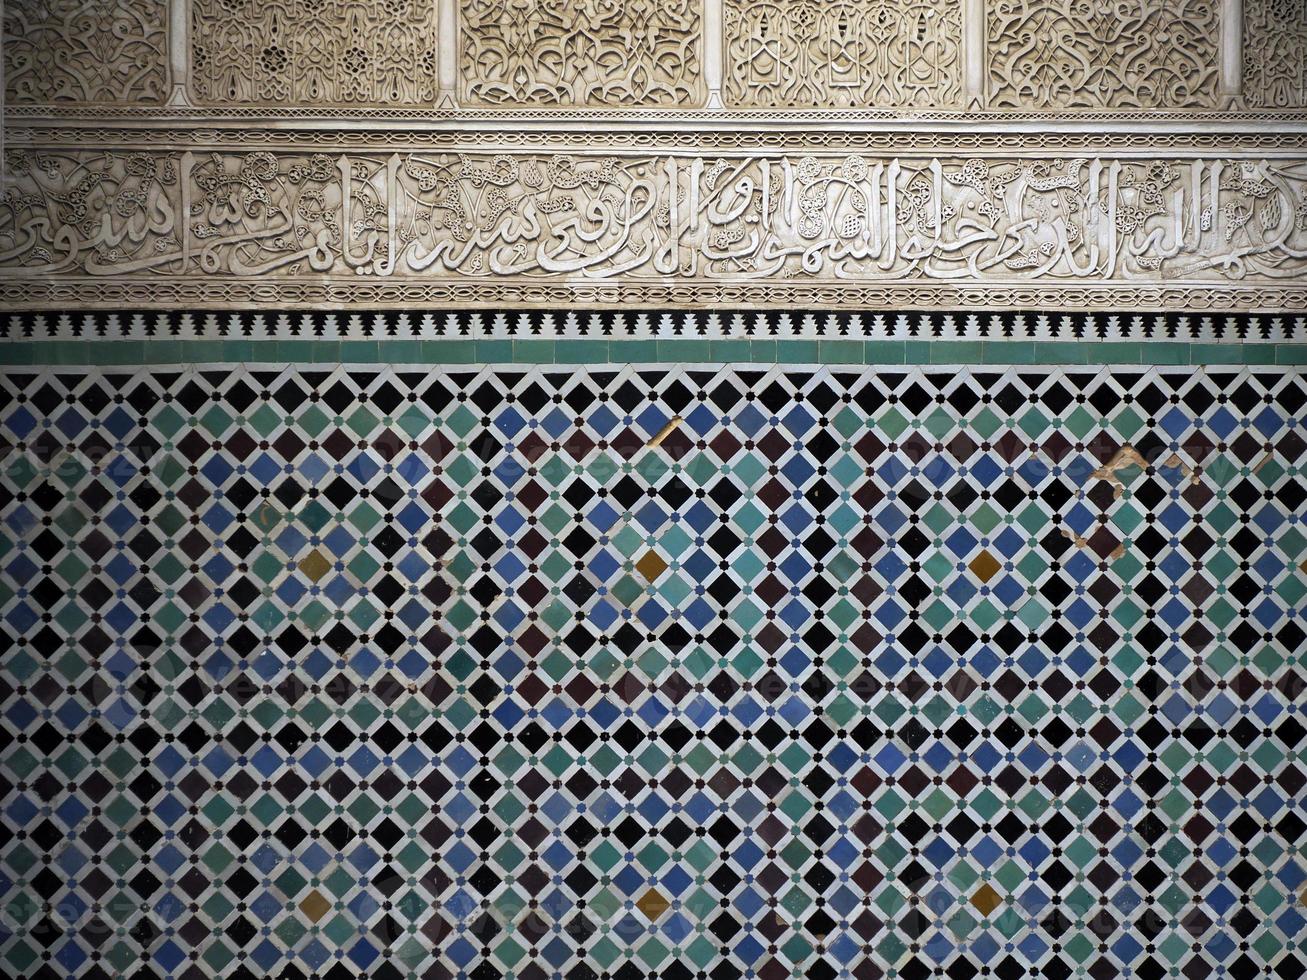 madrasa al-attarine à fès, maroc photo